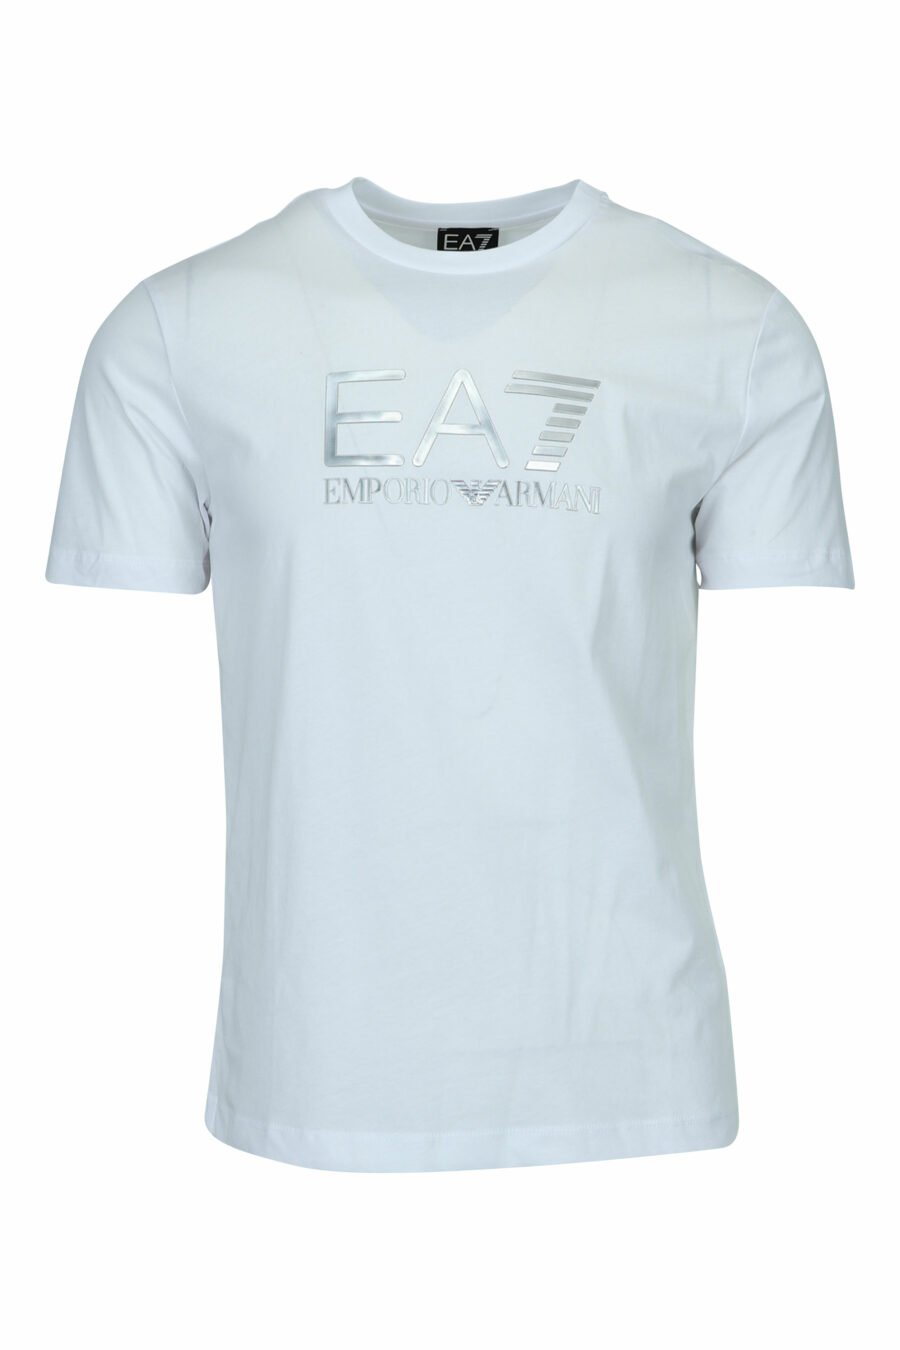 Camiseta blanca con maxilogo "lux identity" en degradé - 8057970673118